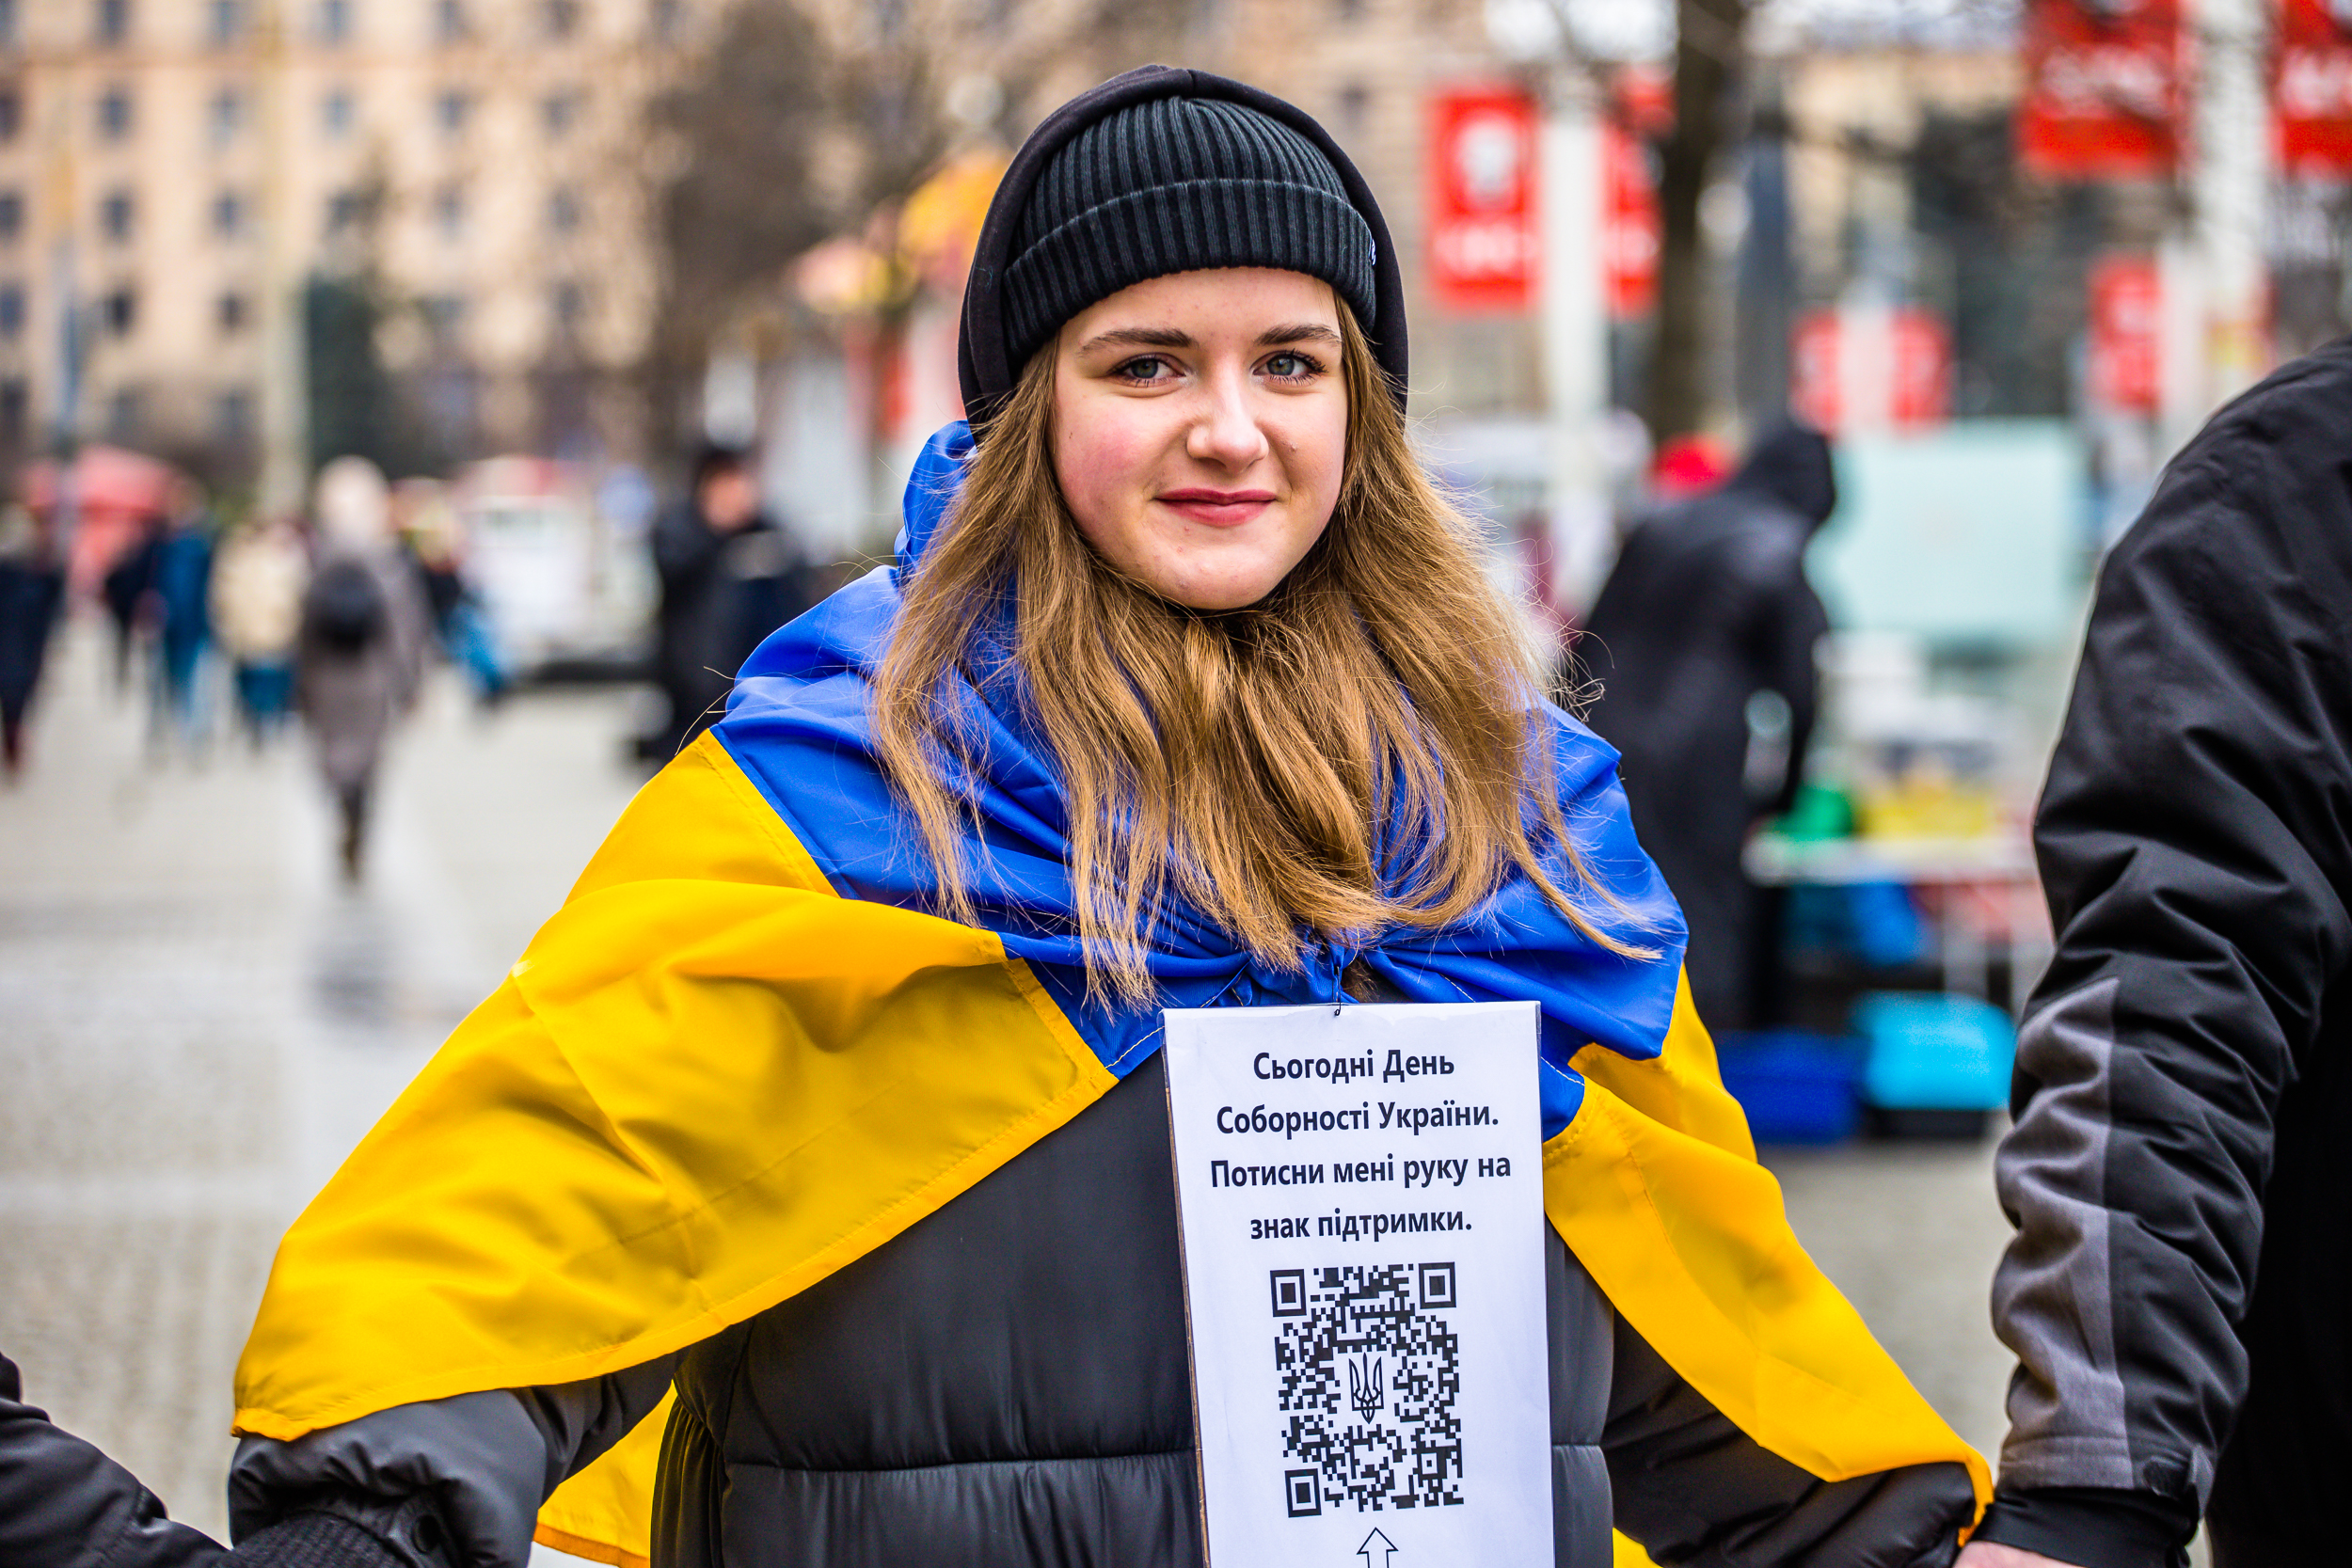  Ланцюг єднання в онлайні: перформери та творча молодь Дніпра об’єднали українців у рiзних куточках свiту